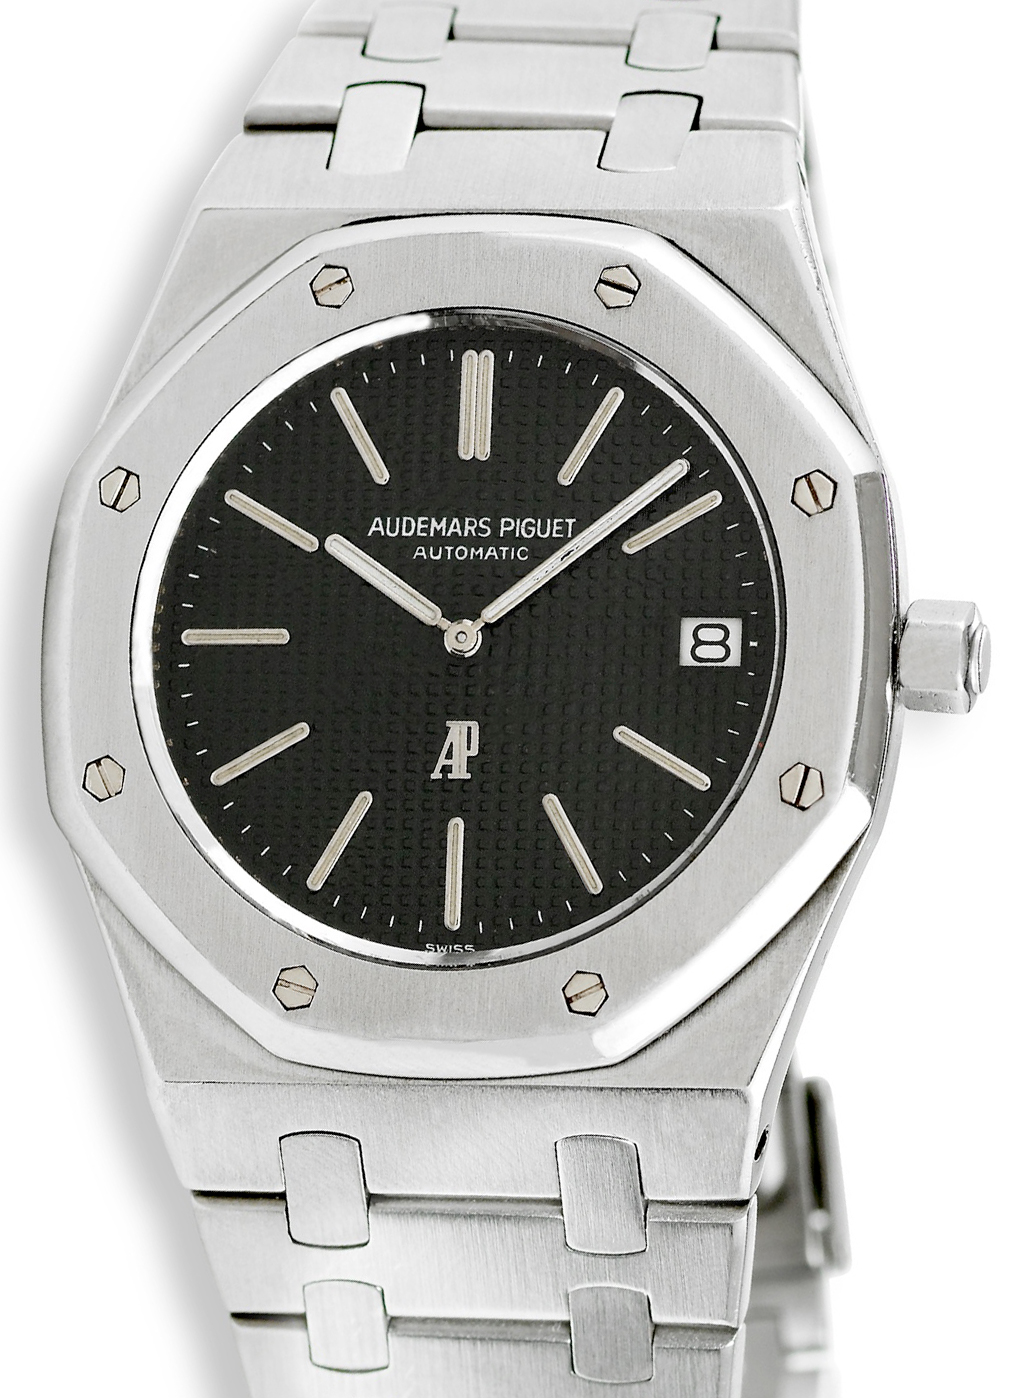 Audemars Piguet Royal Oak Original watch, pictures, reviews, watch prices